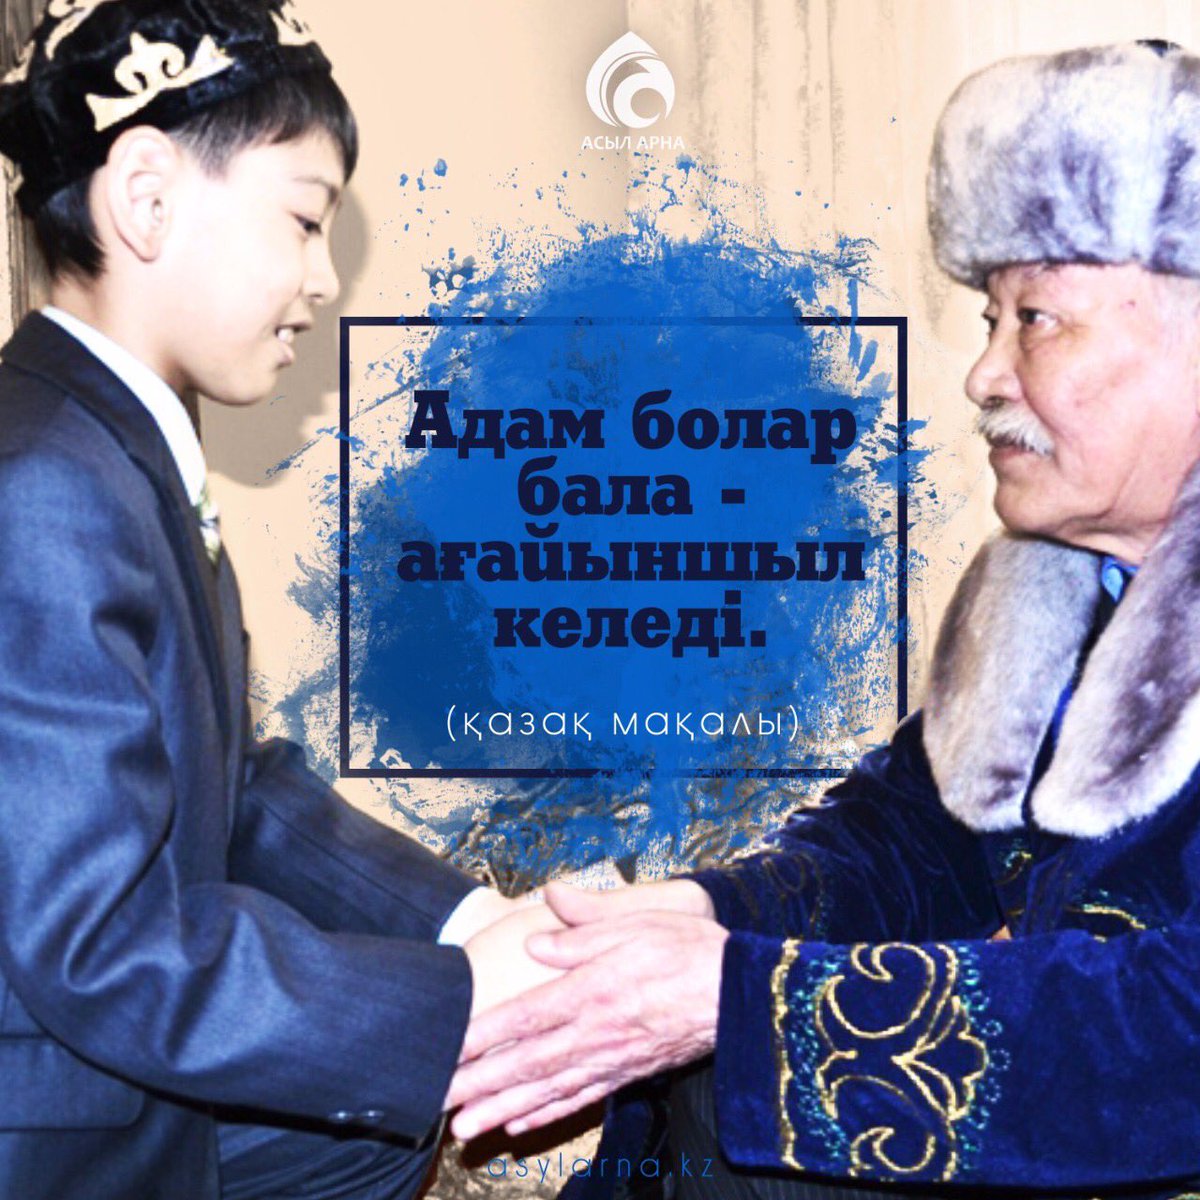 Курсяйт поздравления. Приветствие казахов. Приветствие на казахском. Праздник здороваться у казахов.